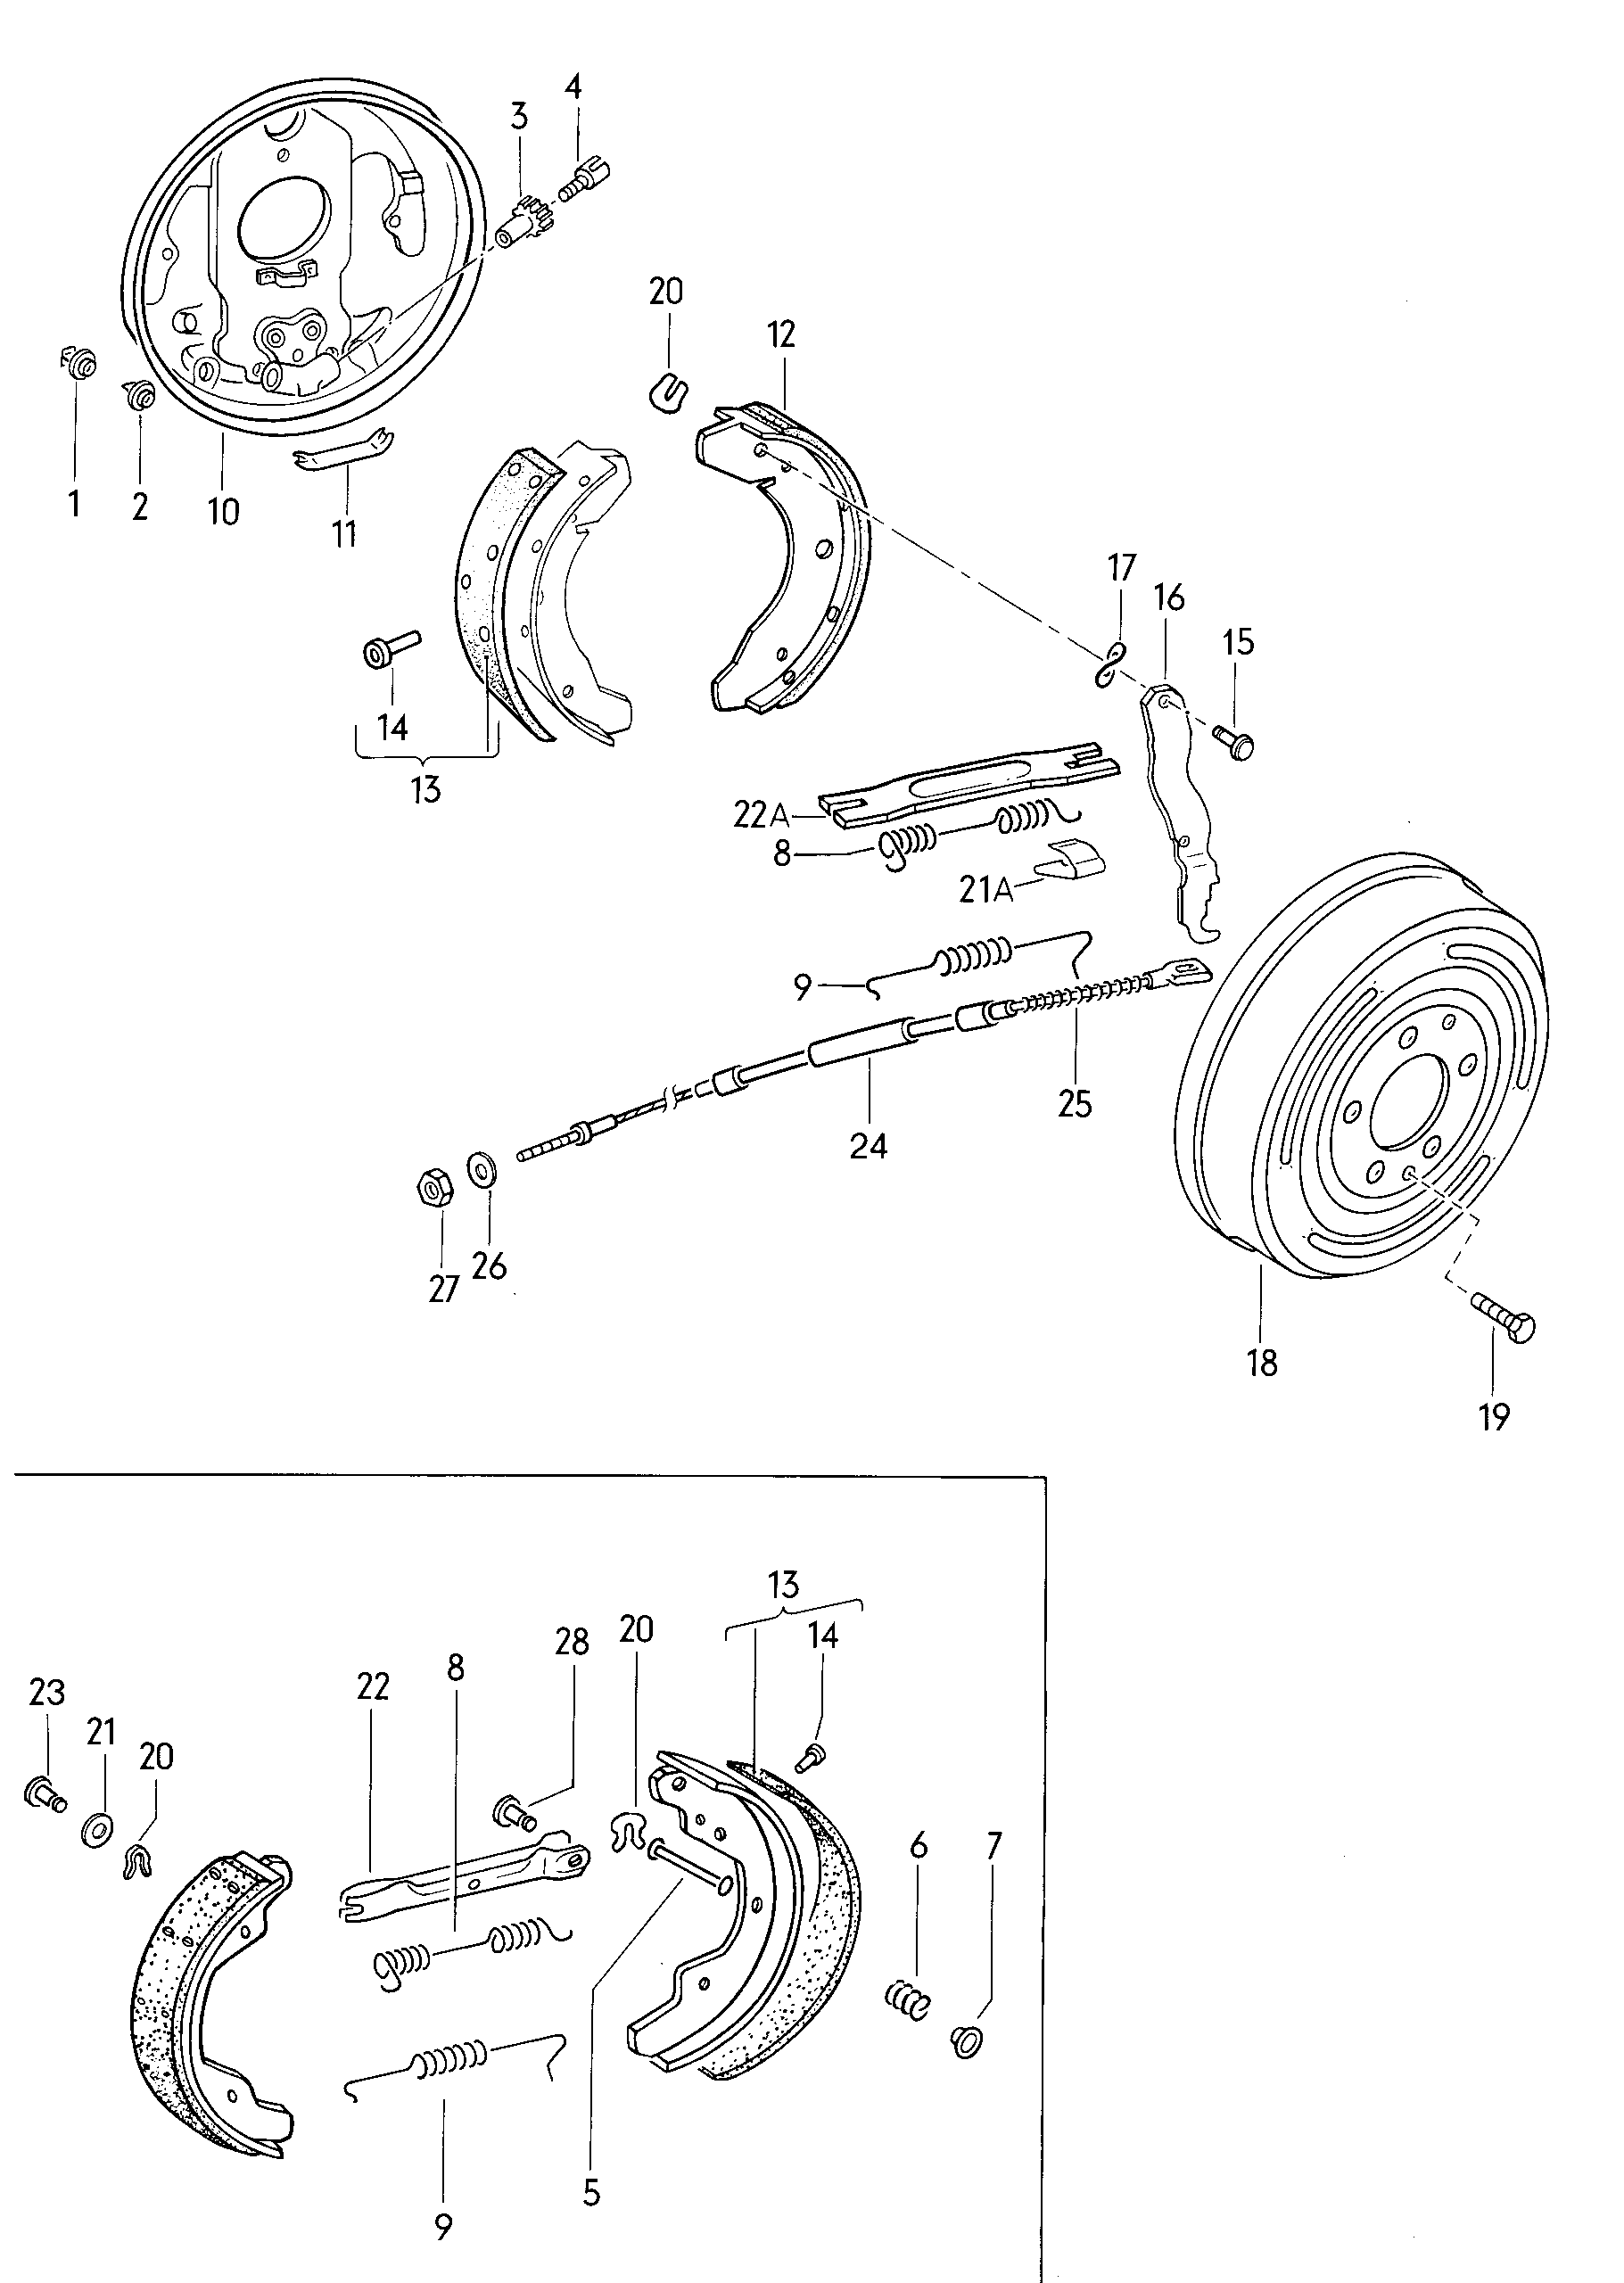 ankerplaatremschoen met voeringremkabel achter - Typ 2/syncro - t2